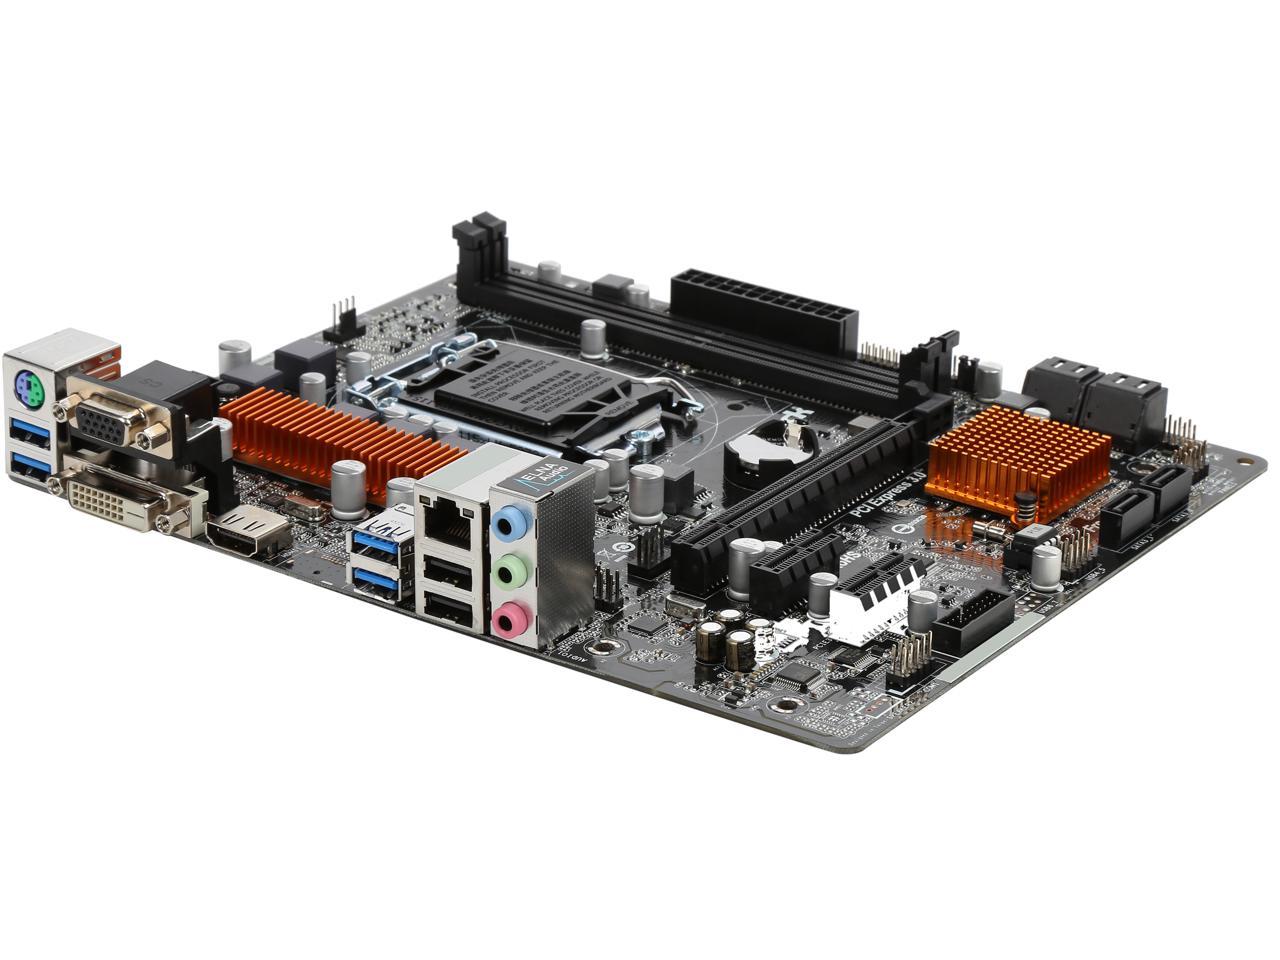 ASRock B150M-HDV LGA 1151 HDMI SATA 6Gb/s USB 3.0 Micro ATX Intel Motherboard